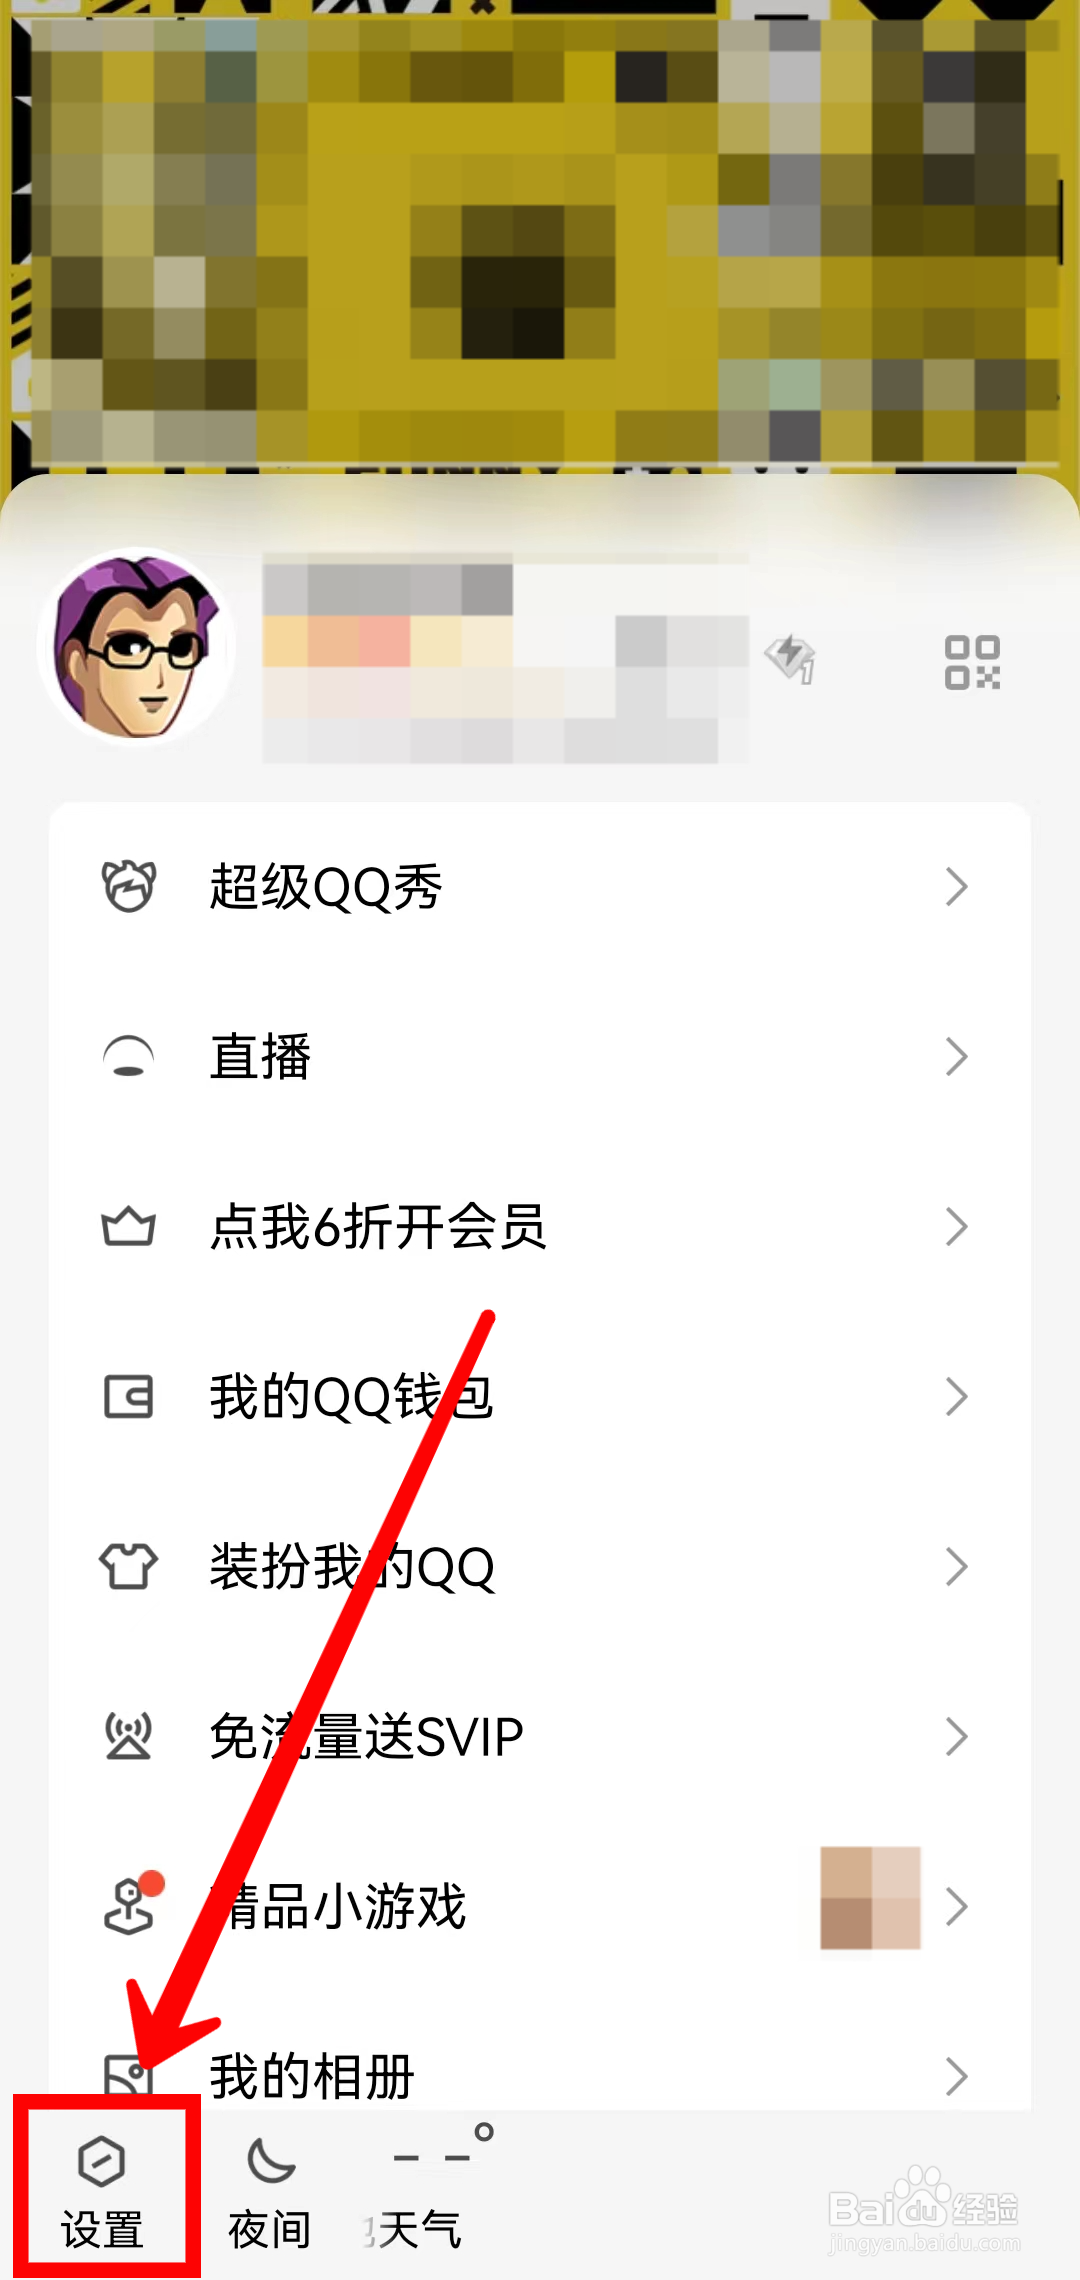 怎样申请新的QQ号